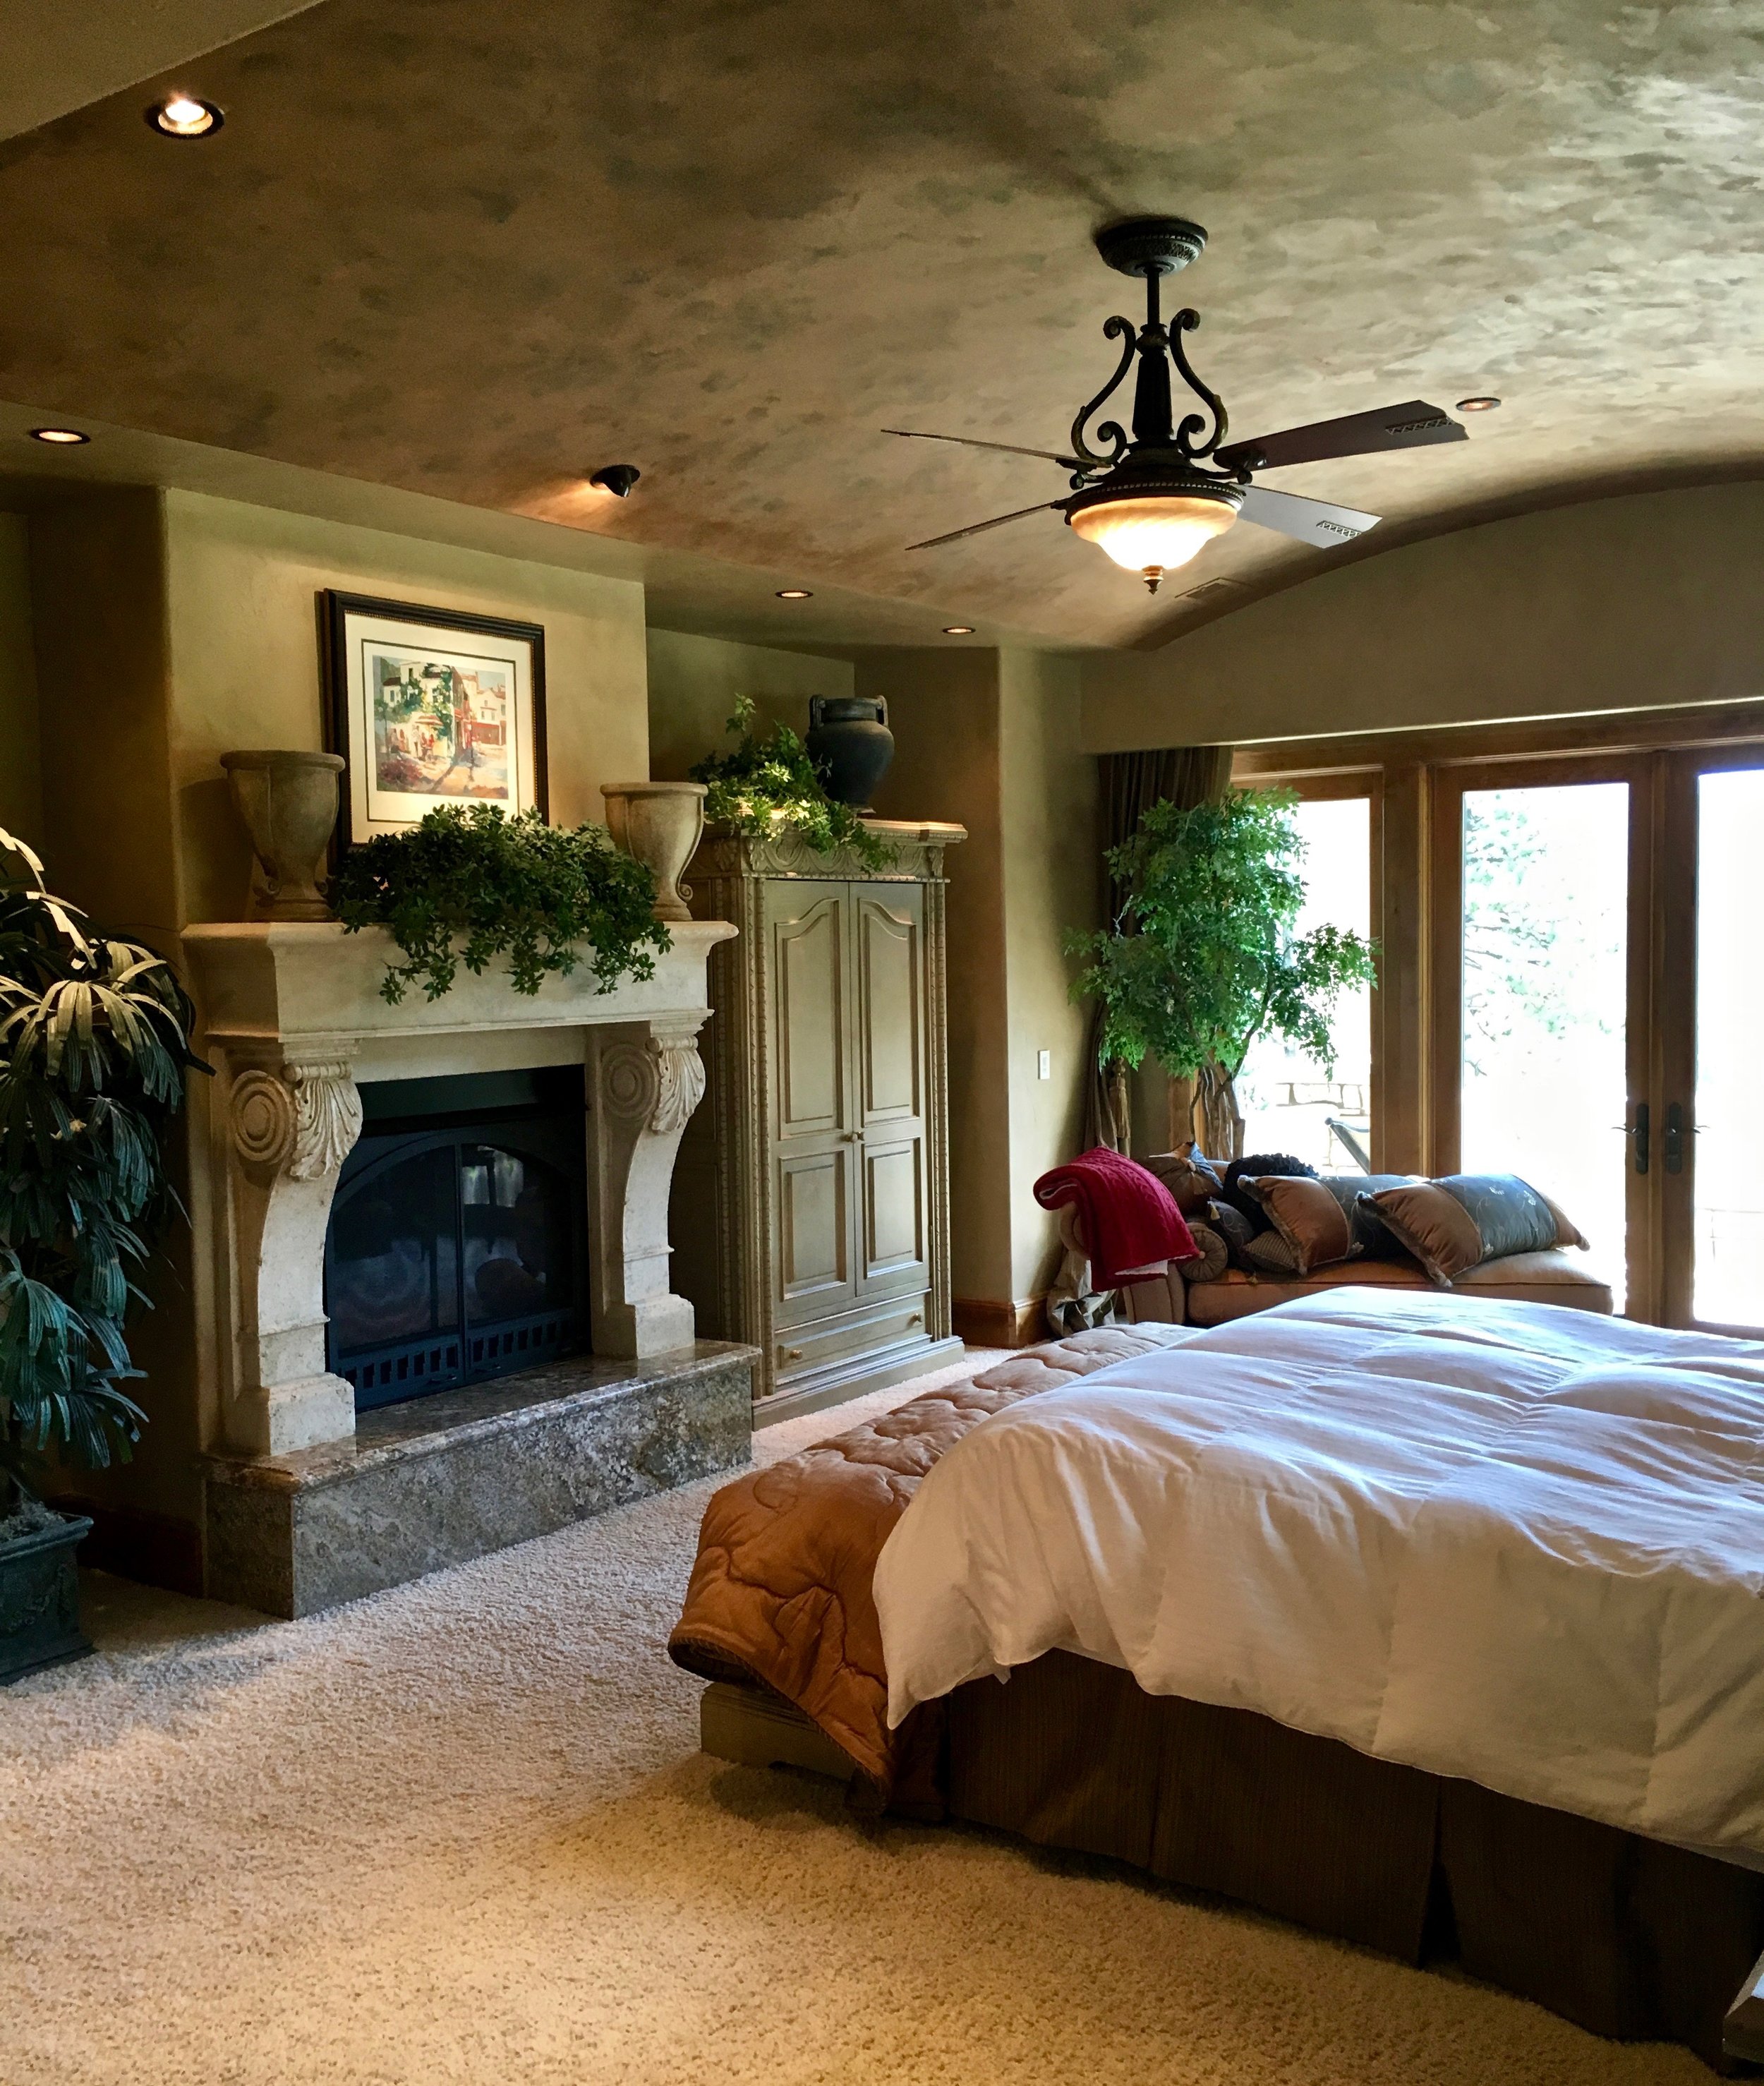 indoor-lighting-bedroom-art-ceiling-fan-residential-electrical-1.jpg